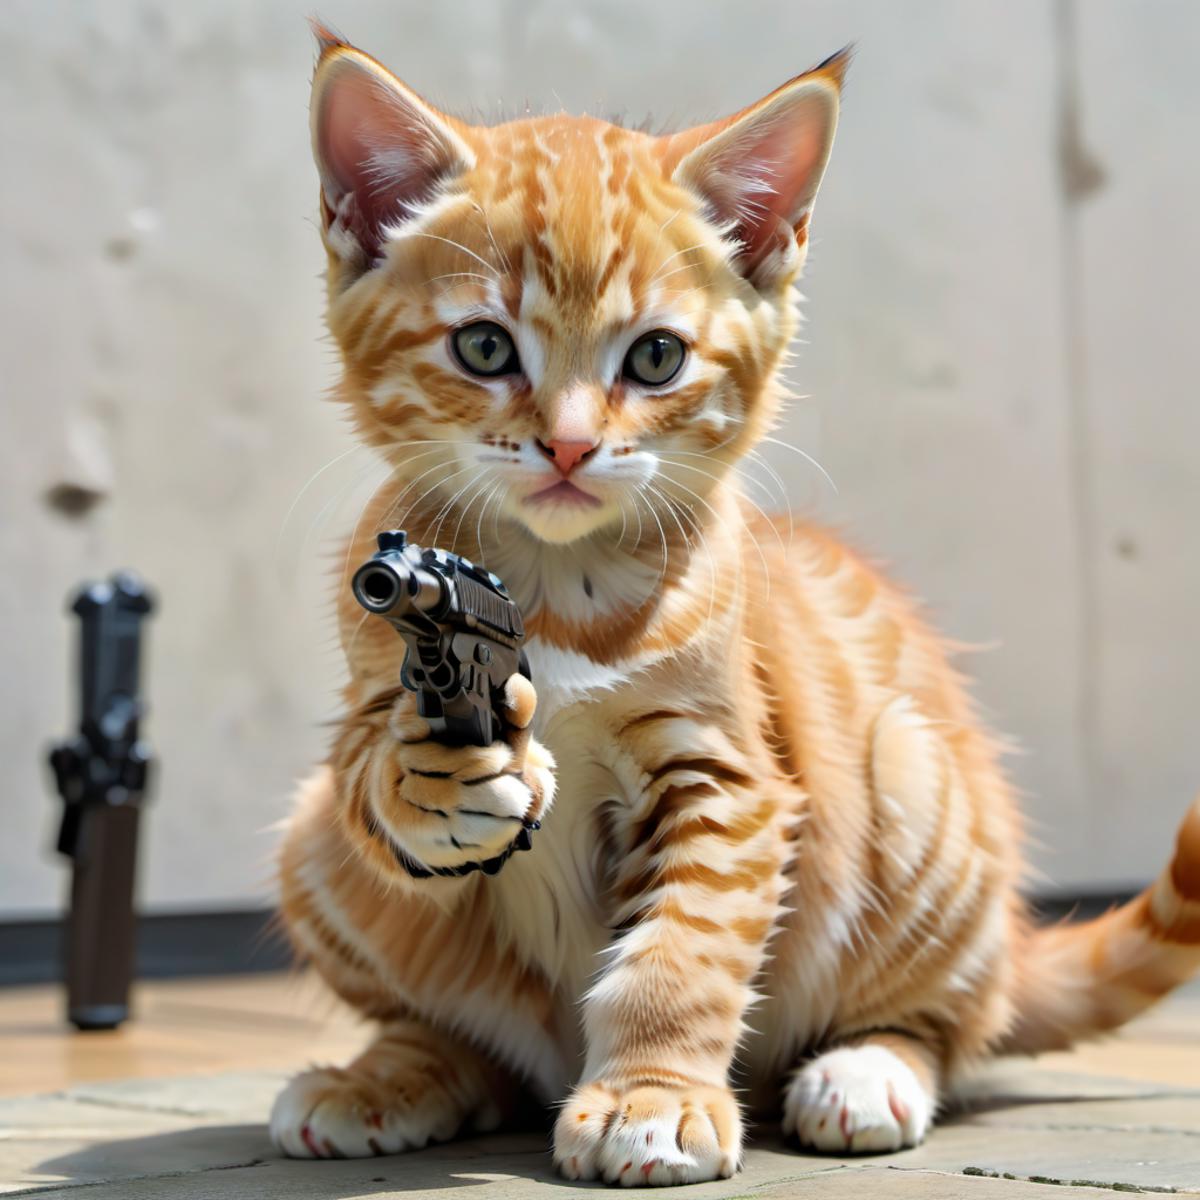 A small kitten holding a toy gun.